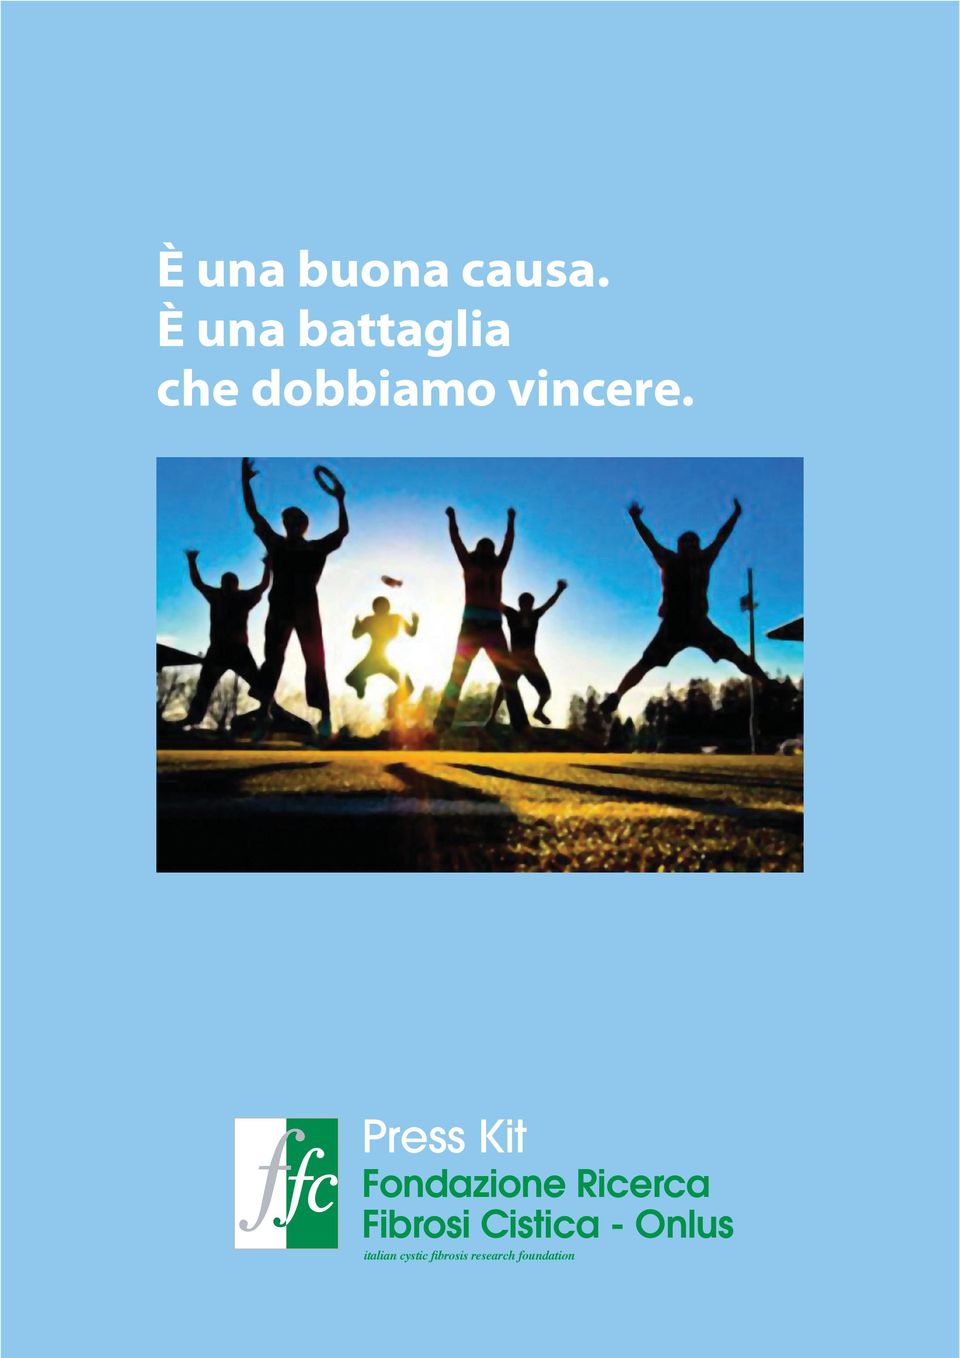 Press Kit Fondazione Ricerca Fibrosi